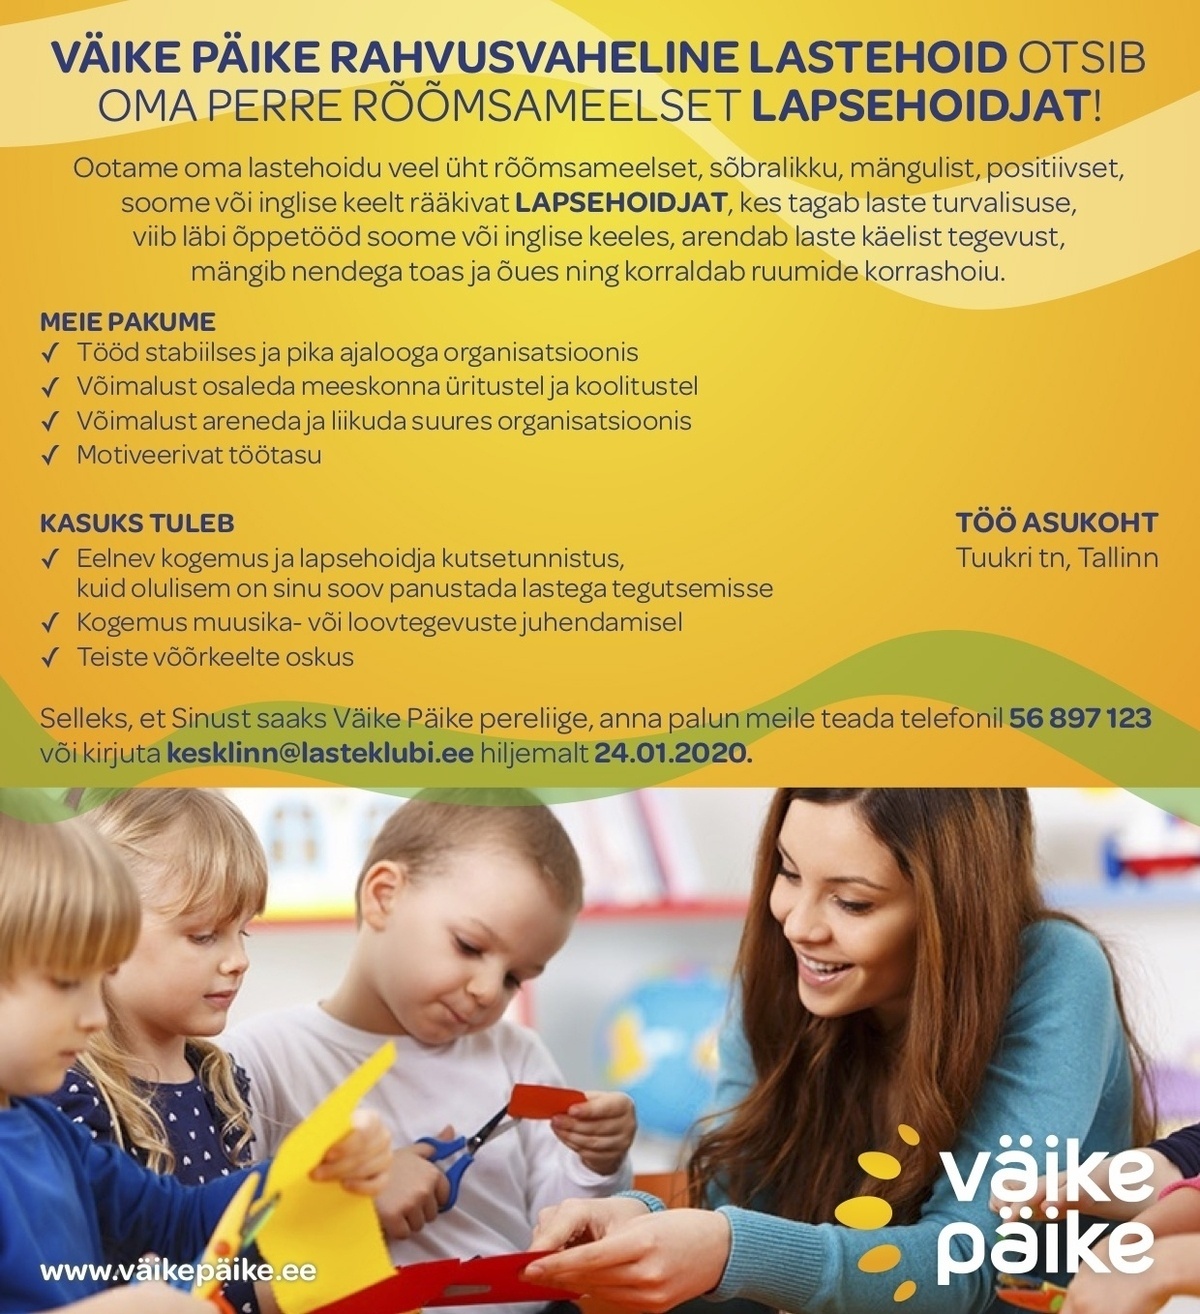 Väike Päike Rahvusvaheline Lastehoid Lapsehoidja (Väike Päike Rahvusvaheline Lastehoid)